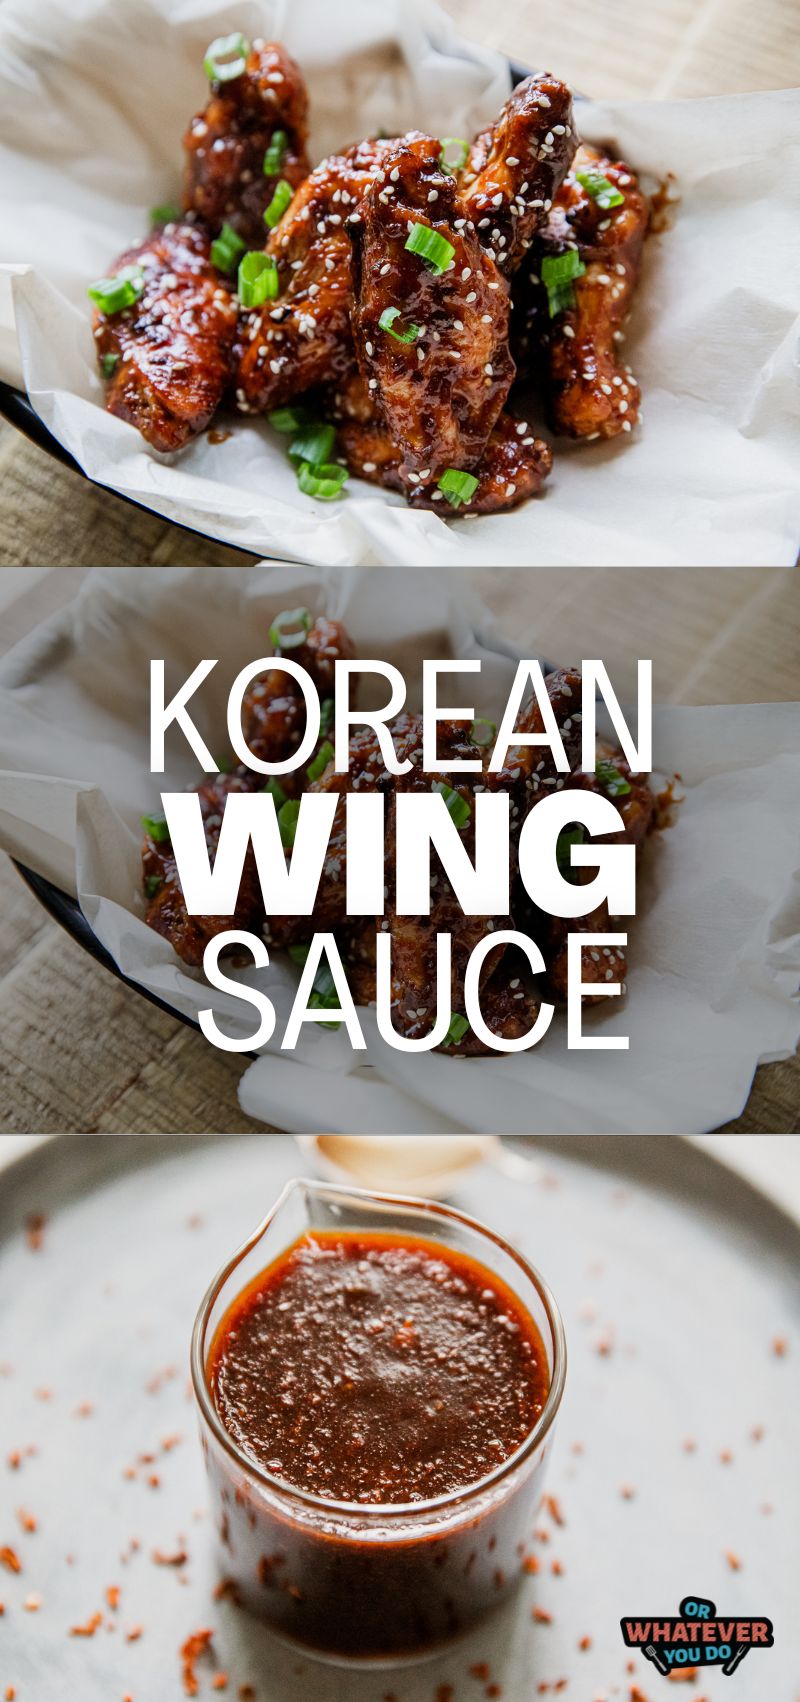 Korean Wing Sauce